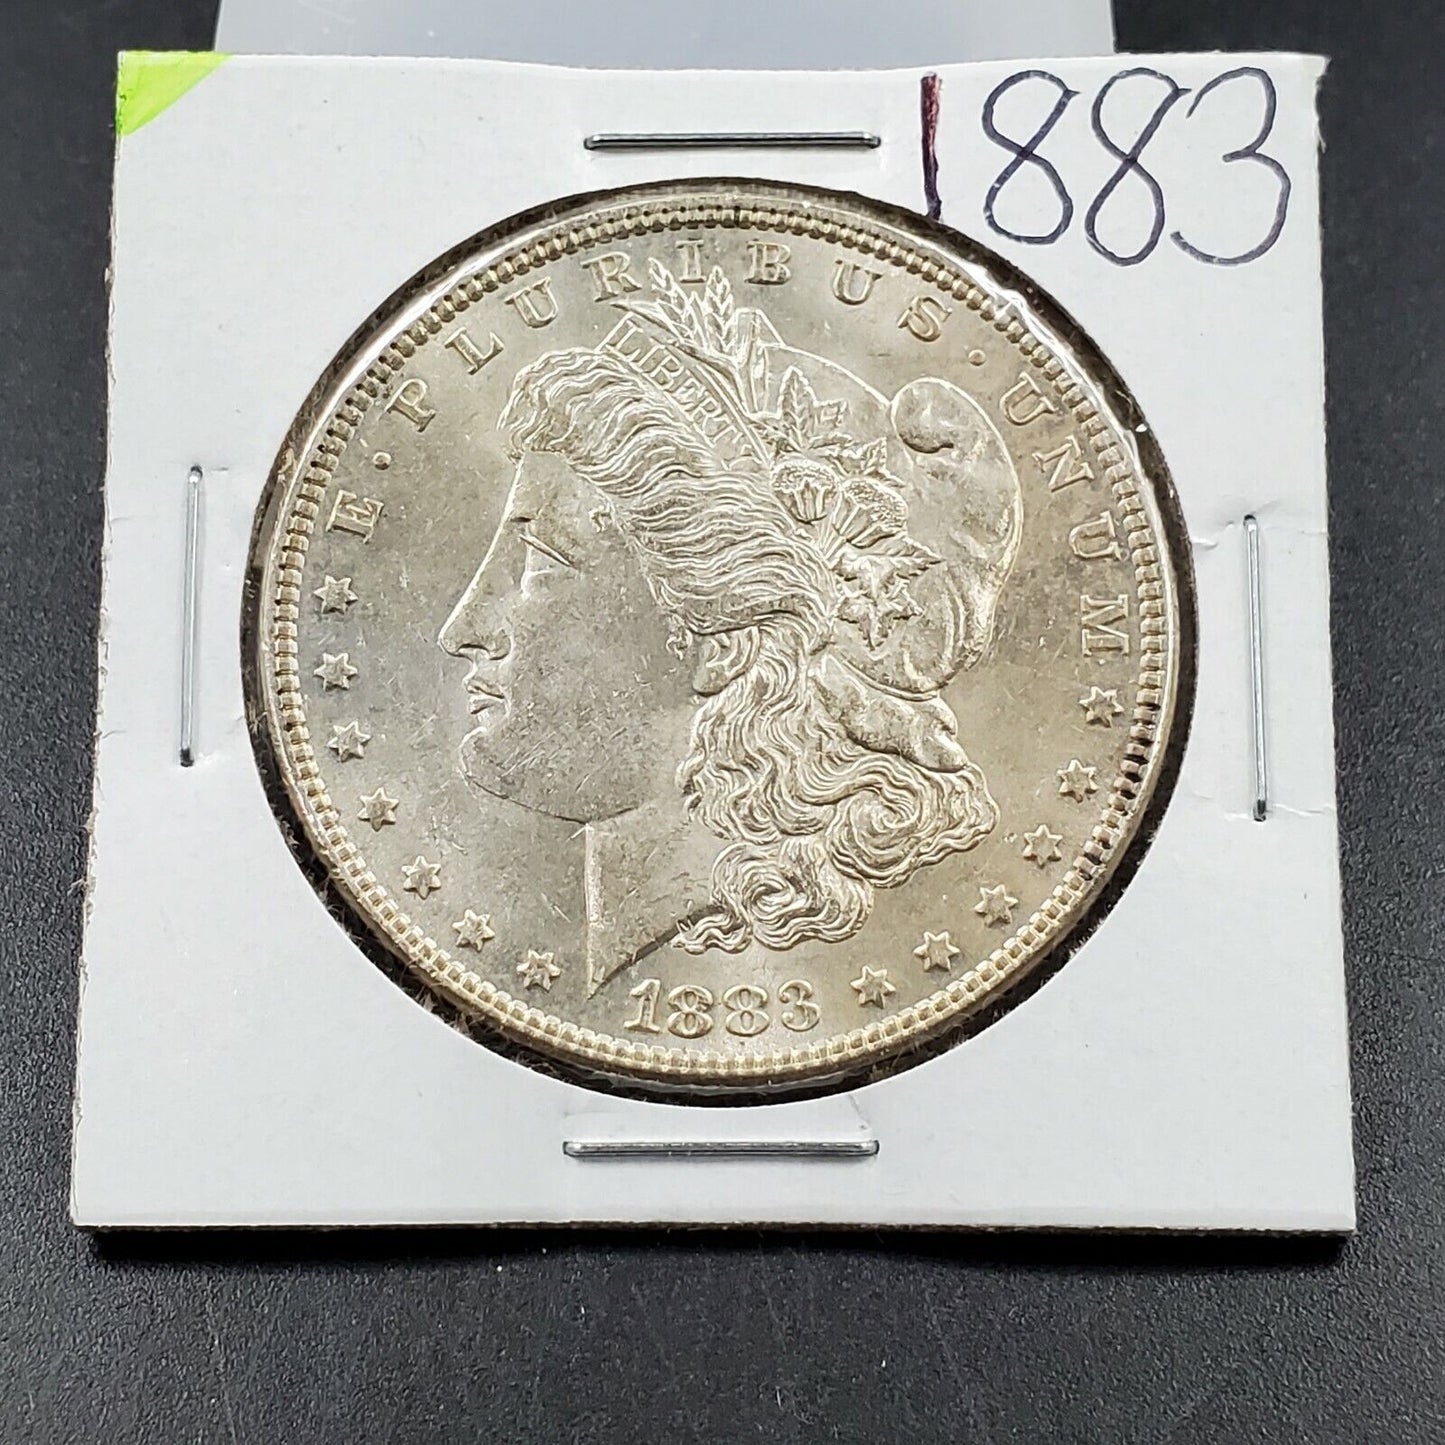 1883 P $1 Morgan Eagle Silver Dollar Coin Choice BU UNC 138 Years Anniversary